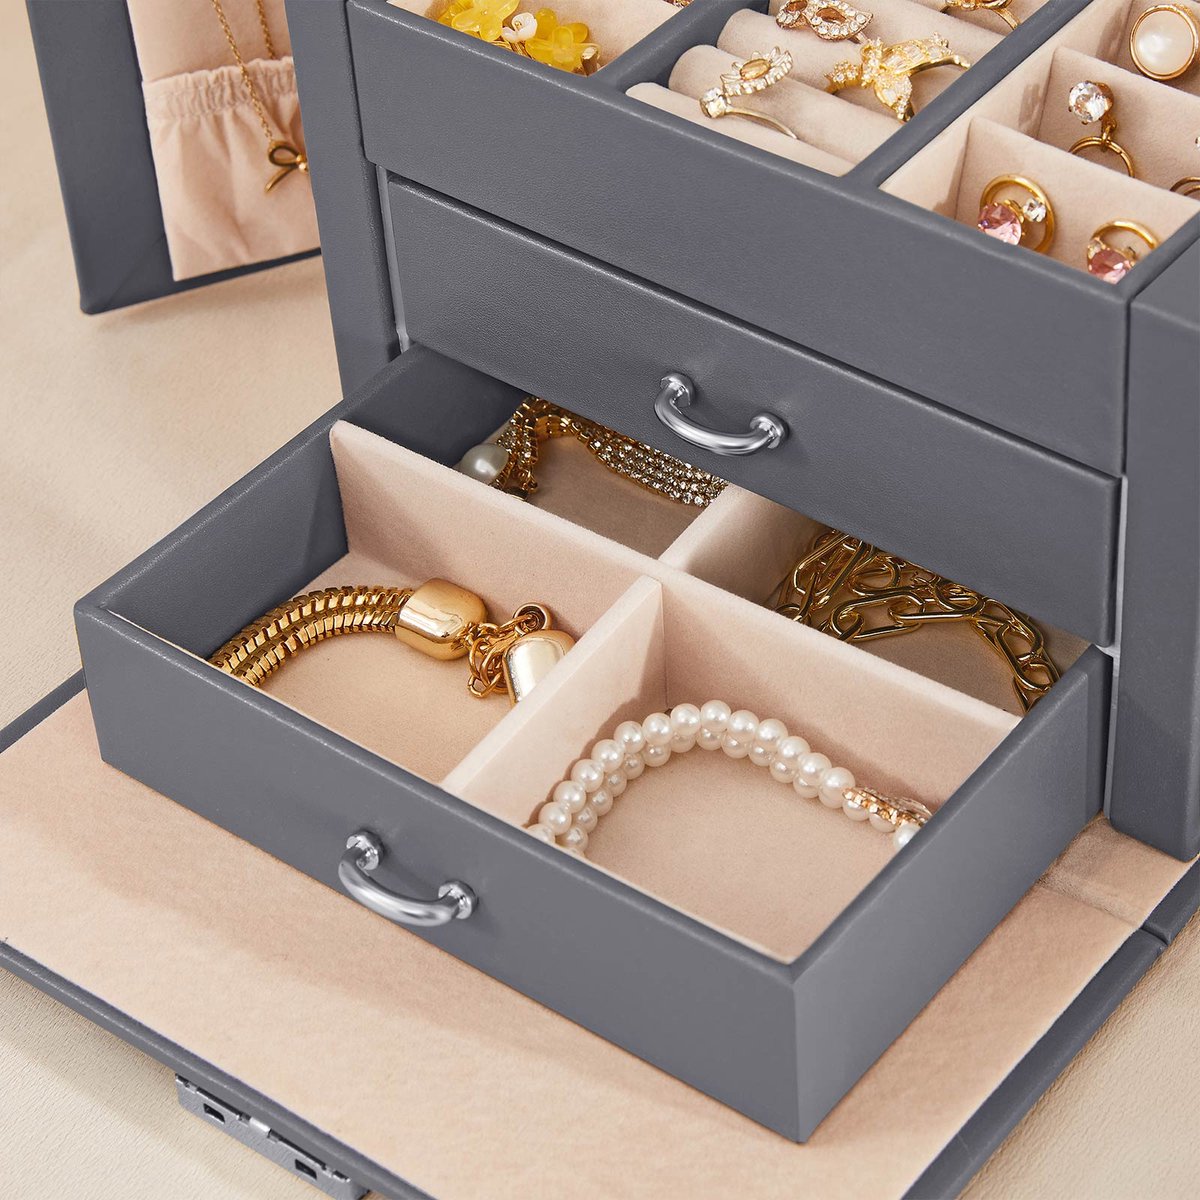 Sieradendoos - Juwelendoos - Juwelenkistje - Draagbaar - Afsluitbaar juwelendoosje - Met 2 lades - Spiegel - Met slot en sleutel